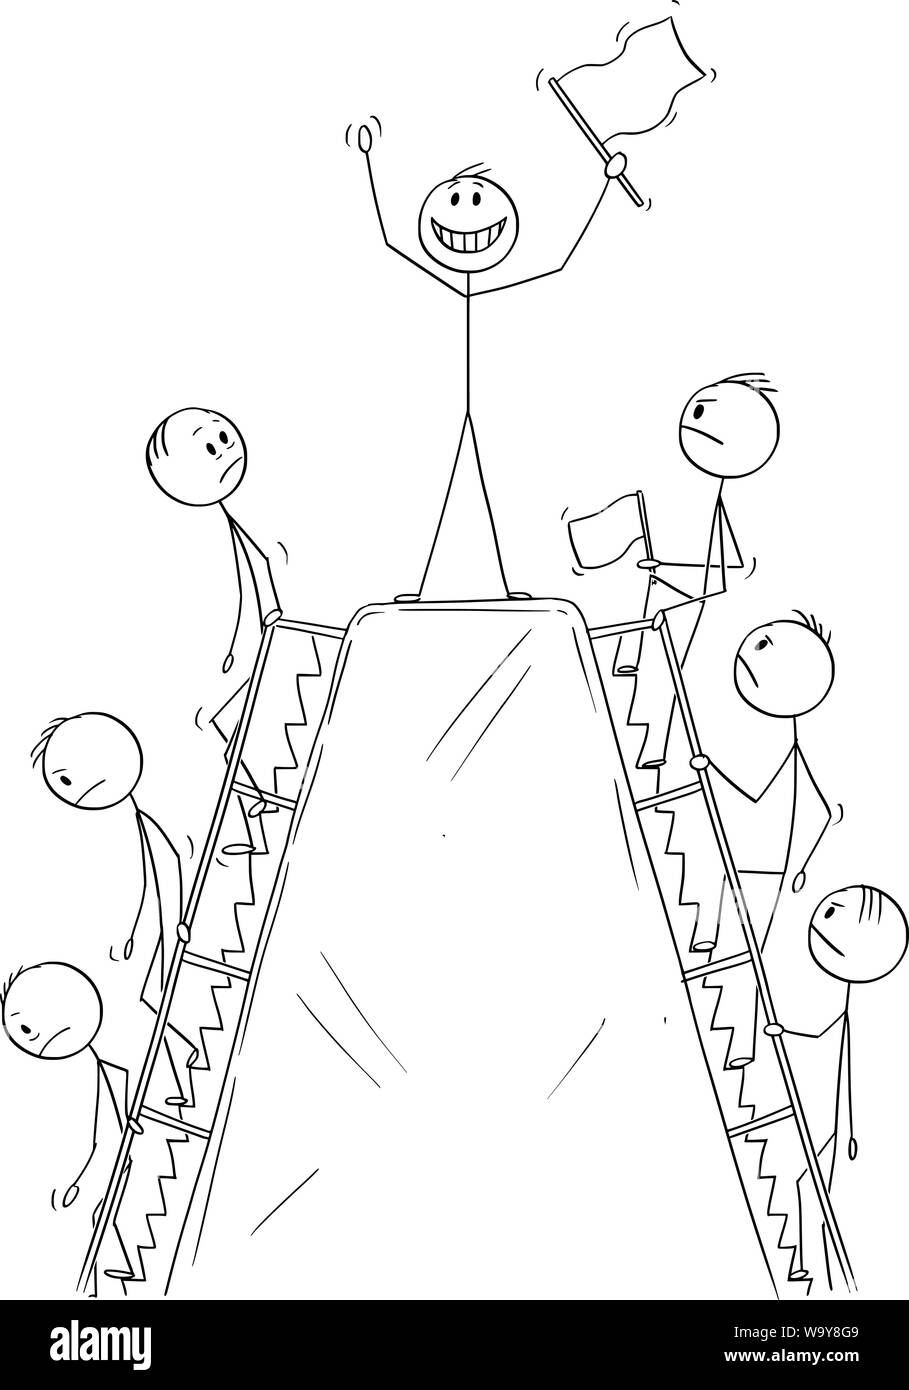 Vektor cartoon Strichmännchen Zeichnen konzeptionelle Darstellung der Linie der Männer, oder Geschäftsleute Klettern Die Hügel Moment der Erfolg auf dem Gipfel zu genießen, bevor Sie gehen. Stock Vektor